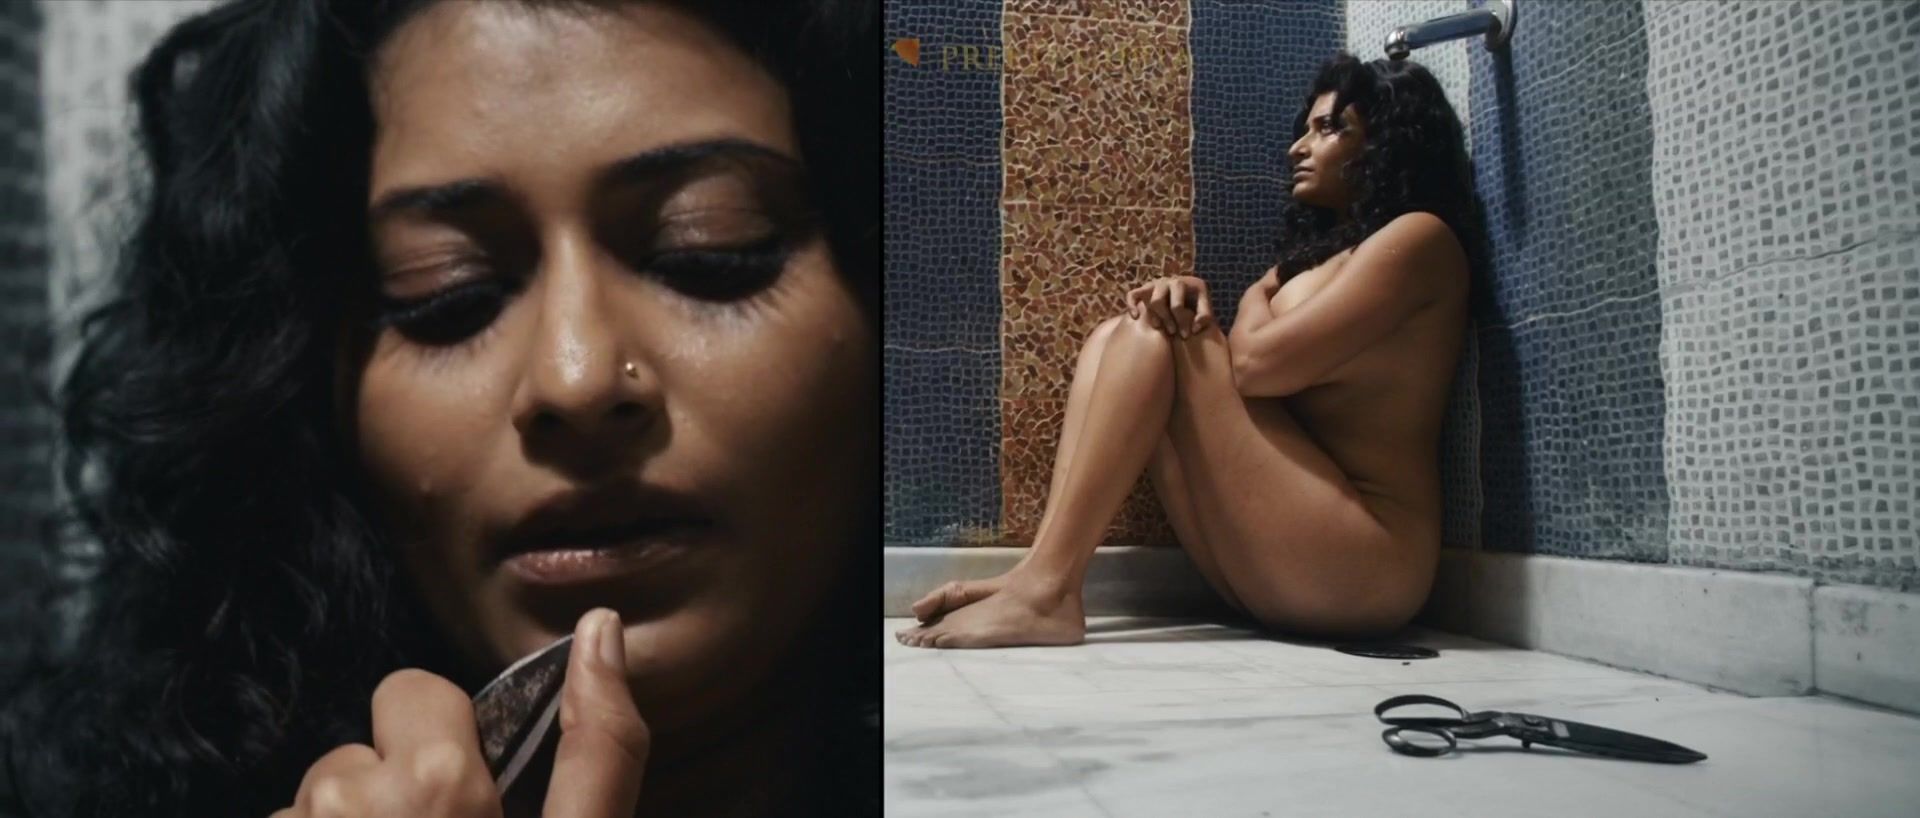 Passionate Lesbian sex scene Preeti Gupta, Bhavani Lee - Unfreedom (2015) Adultcomics